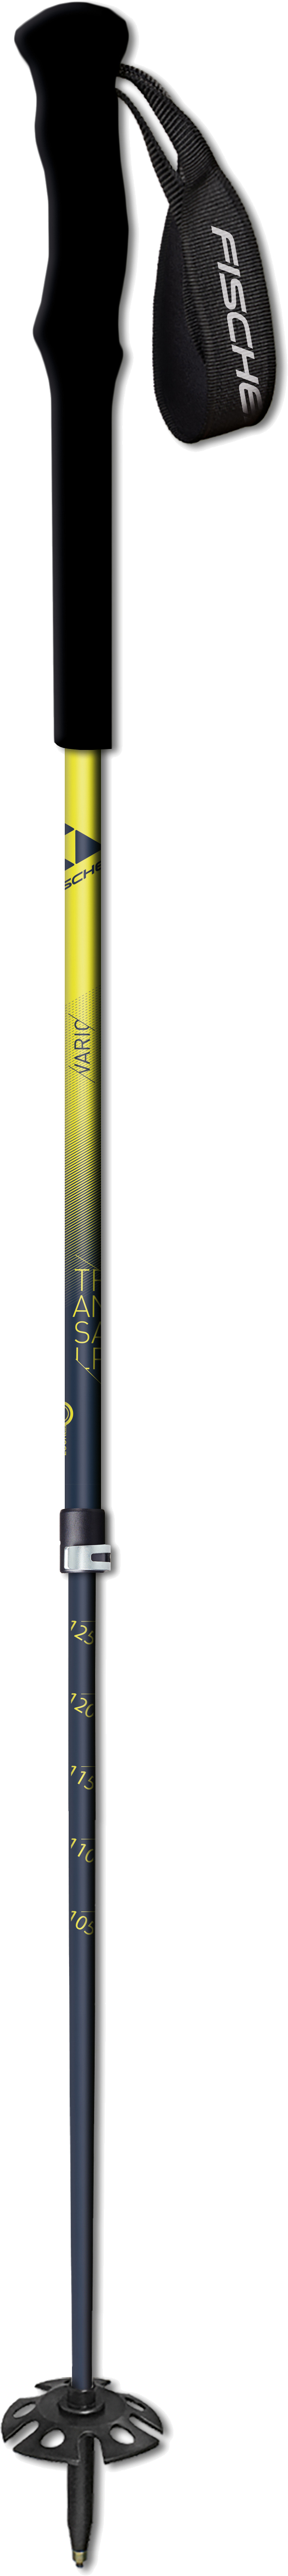 Инструкция лыжные палки для фрирайда Fischer Transalp Variotitanal 105-140 см